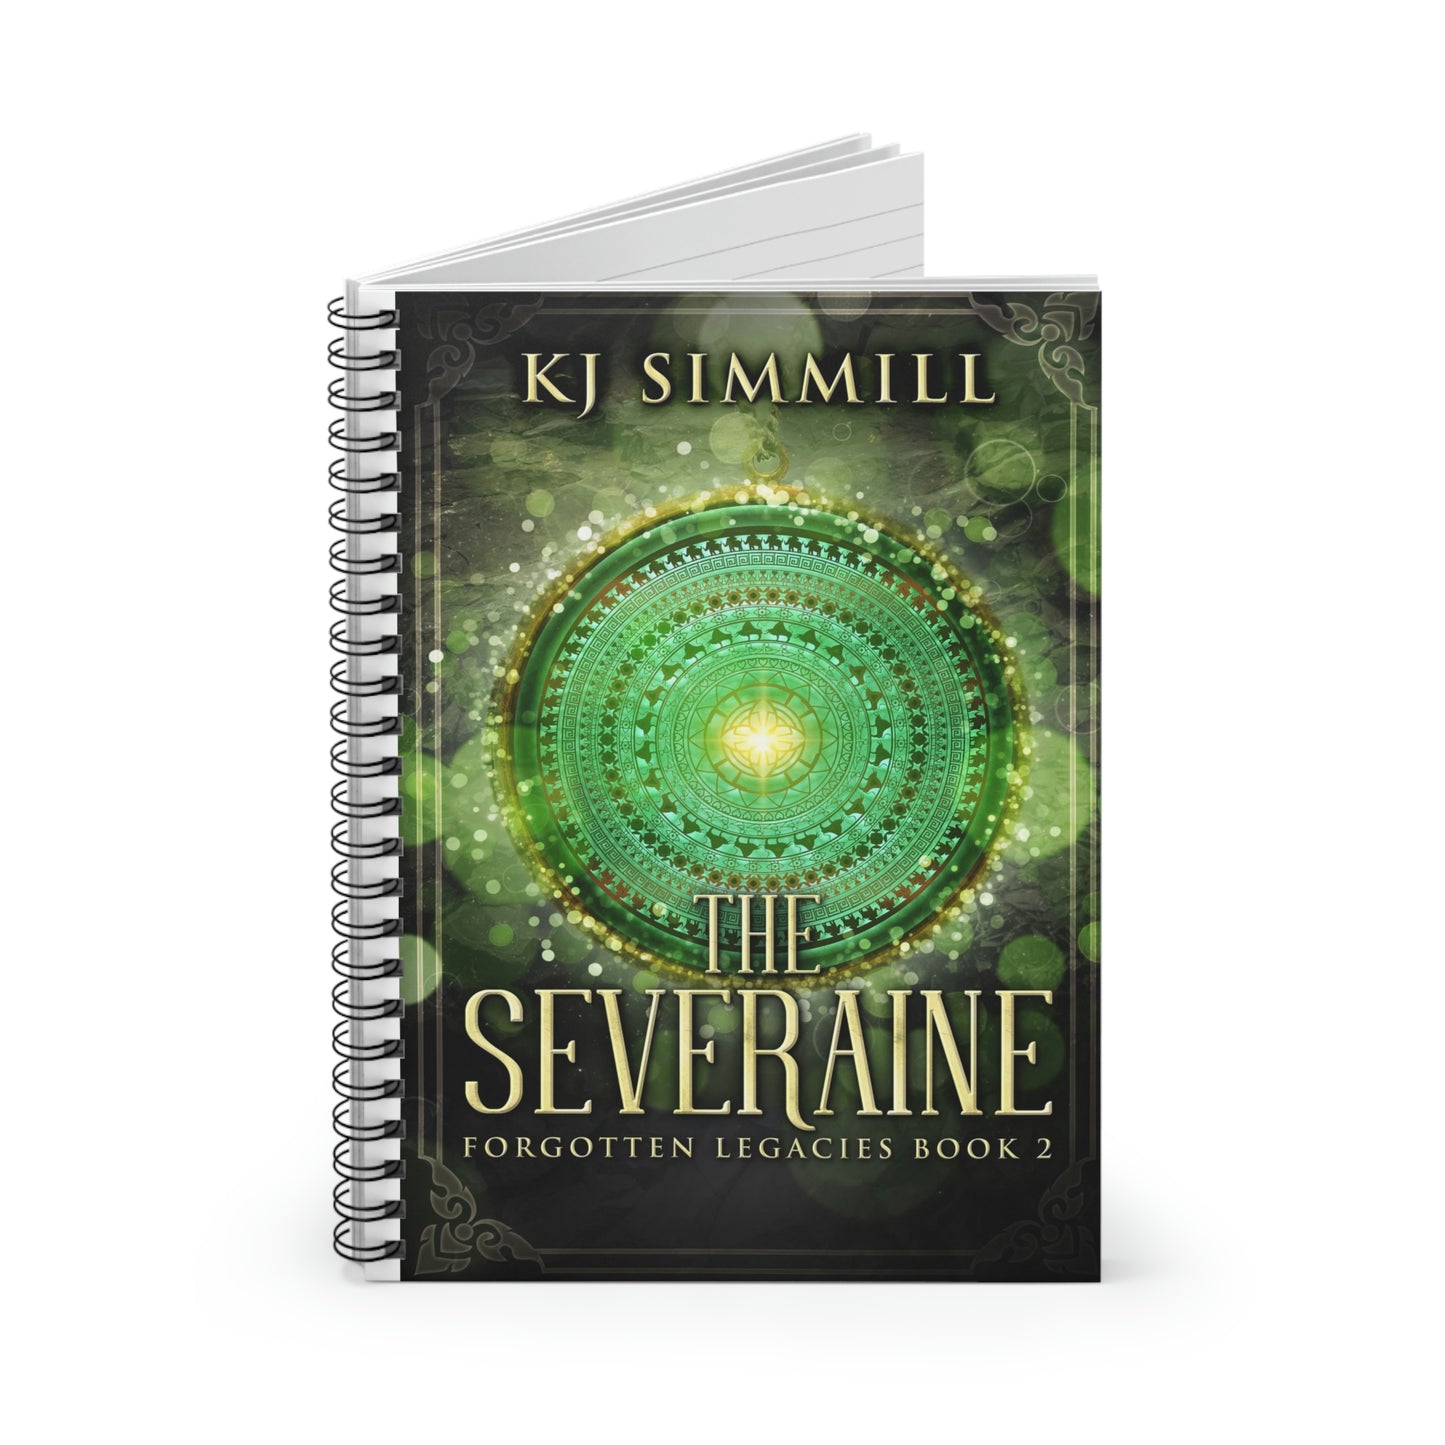 The Severaine - Spiral Notebook